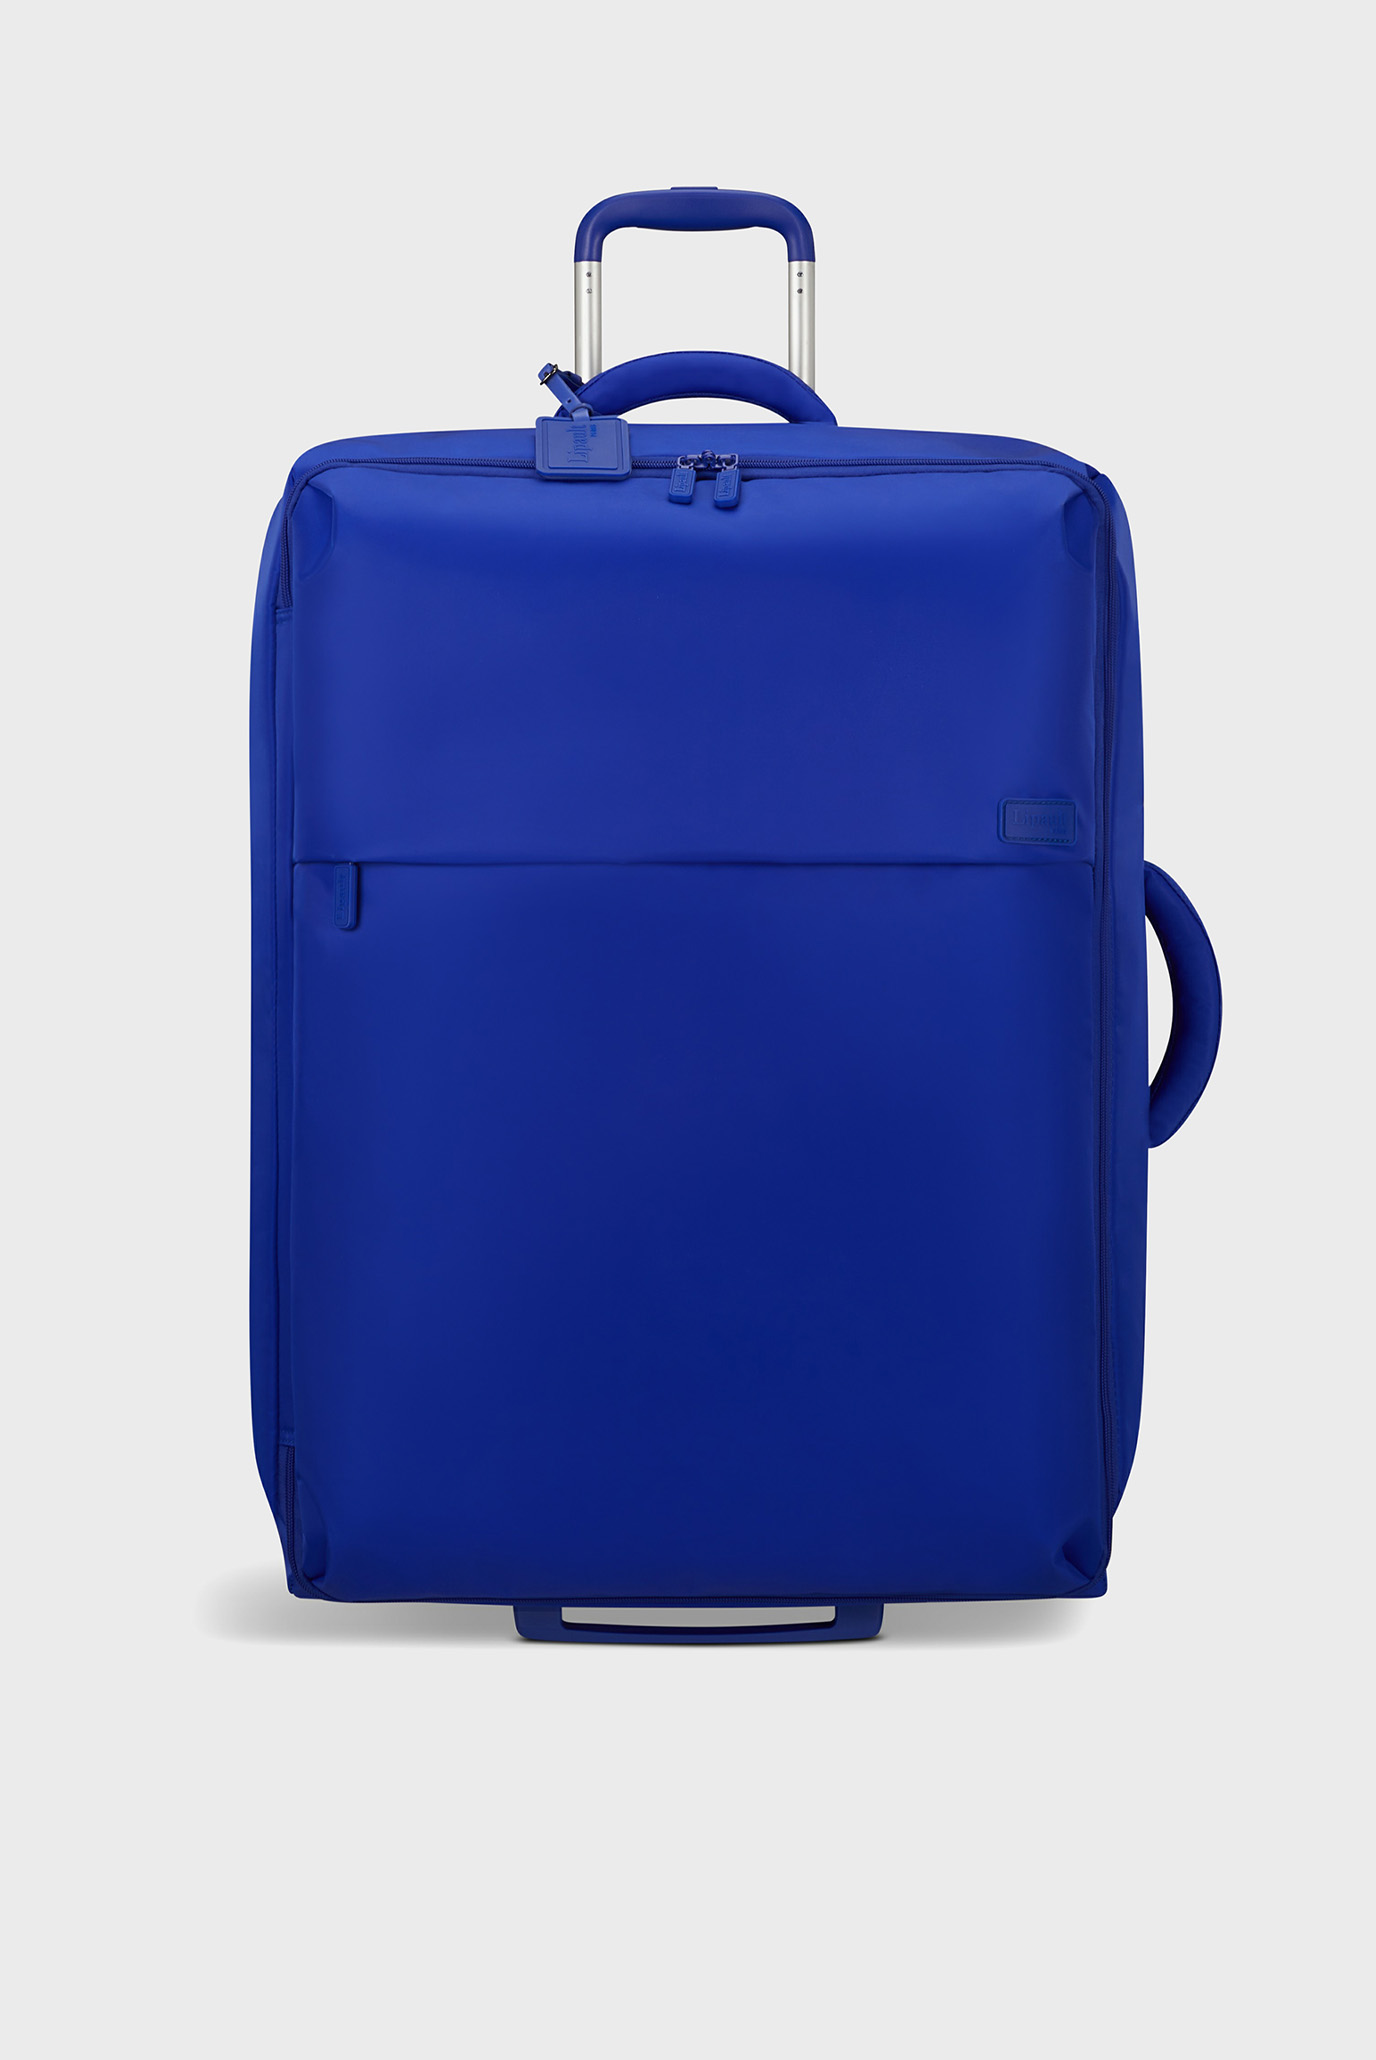 Синяя дорожная сумка на колесах FOLDABLE MAGNETIC 1